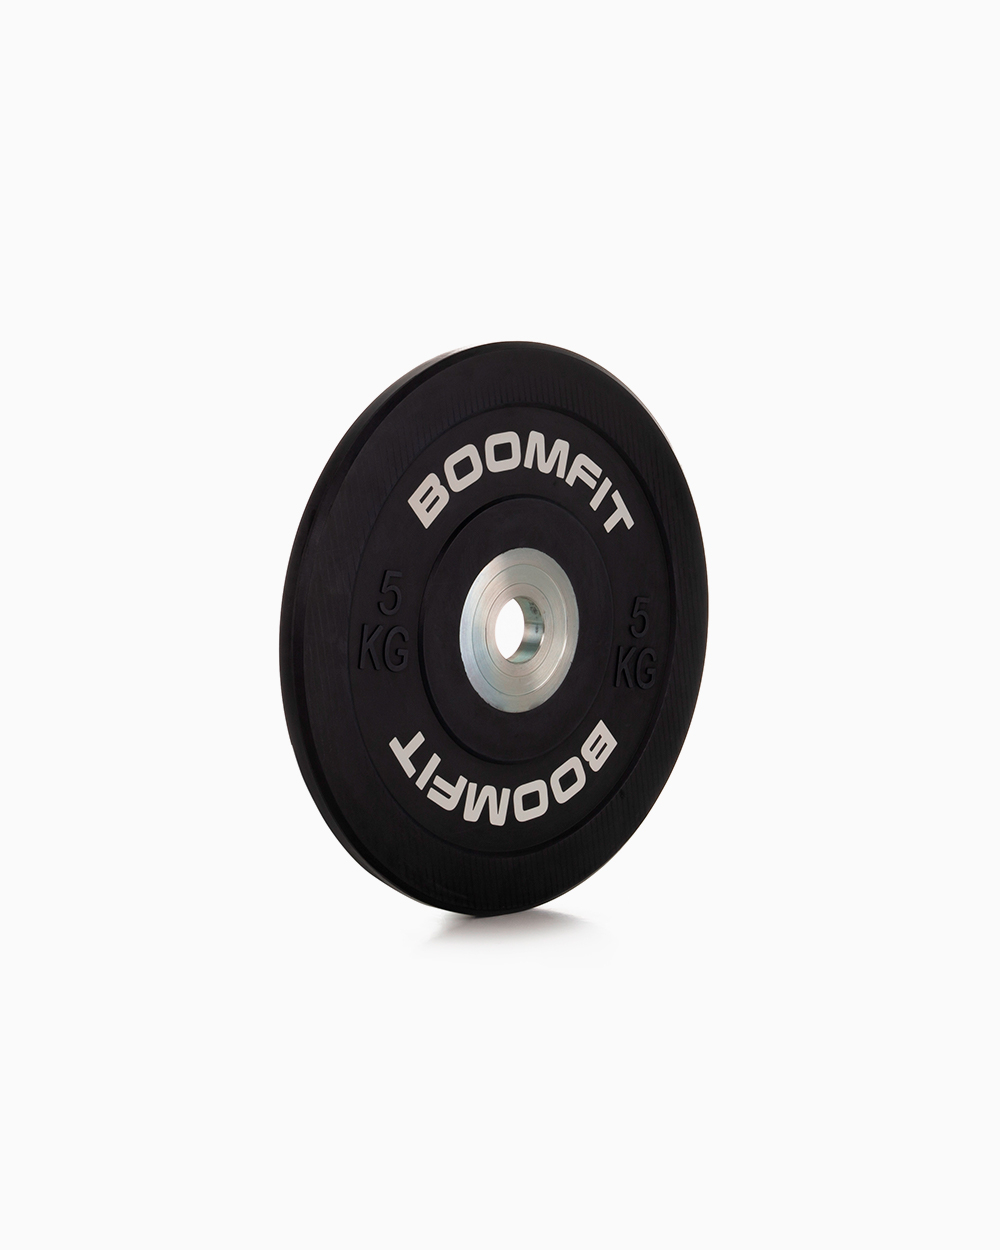 Disco De Competição 5kg - Boomfit - negro - 